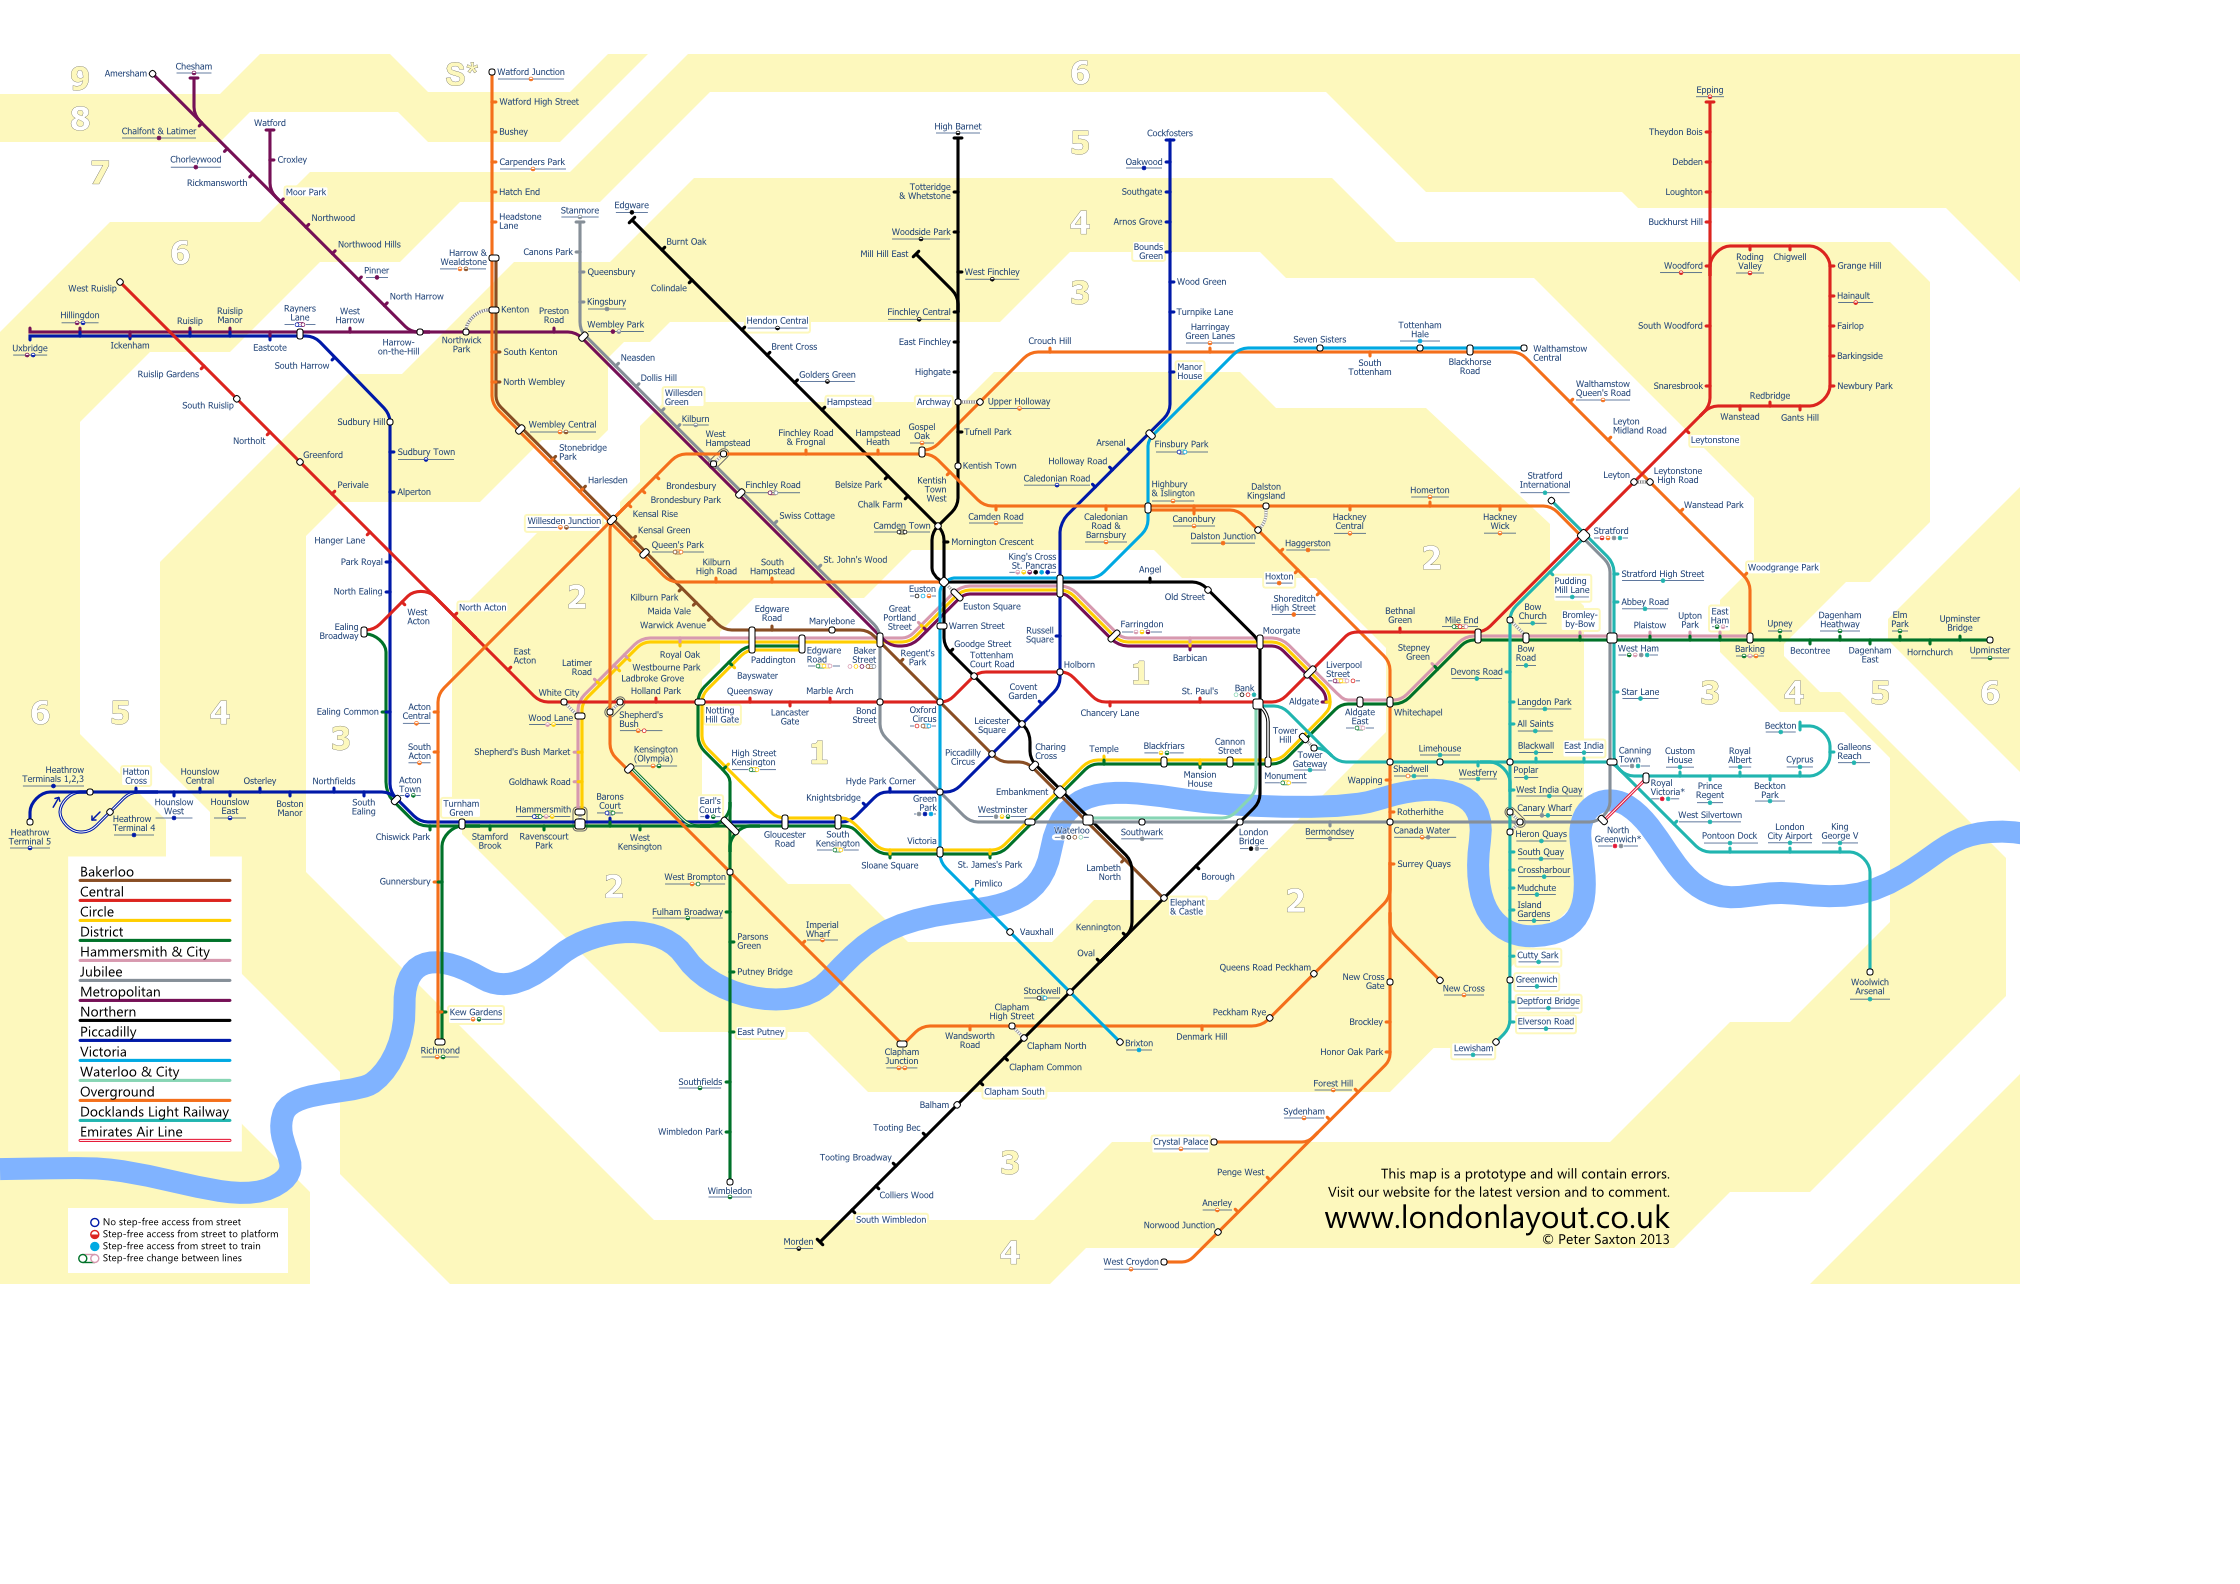 Underground map showing travel zones